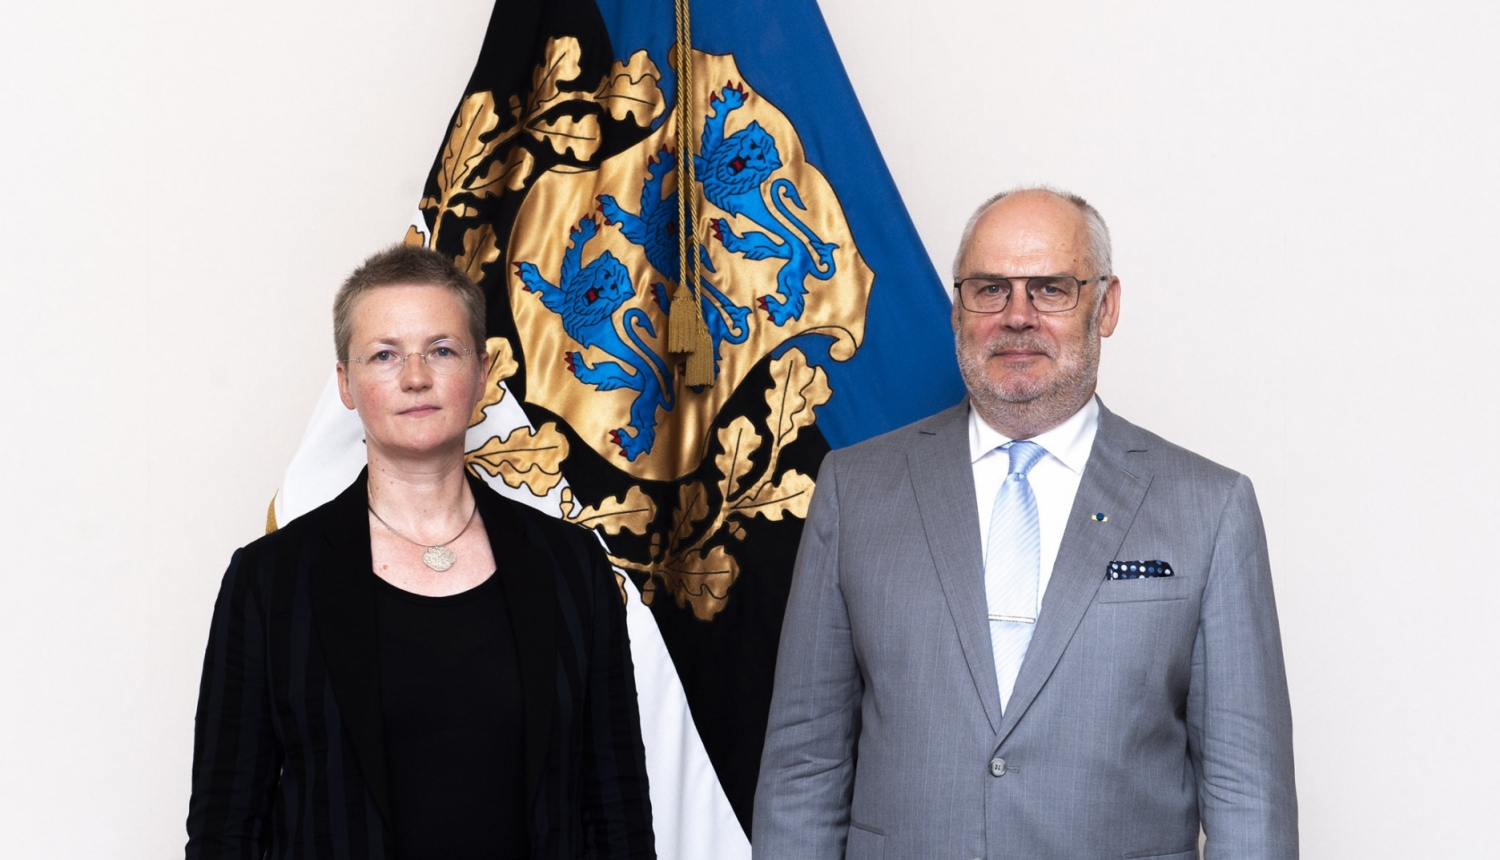 Igaunijas Valsts prezidents Alars Karis šodien akreditēja Latvijas vēstnieci Igaunijā Kristīni Našenieci. 